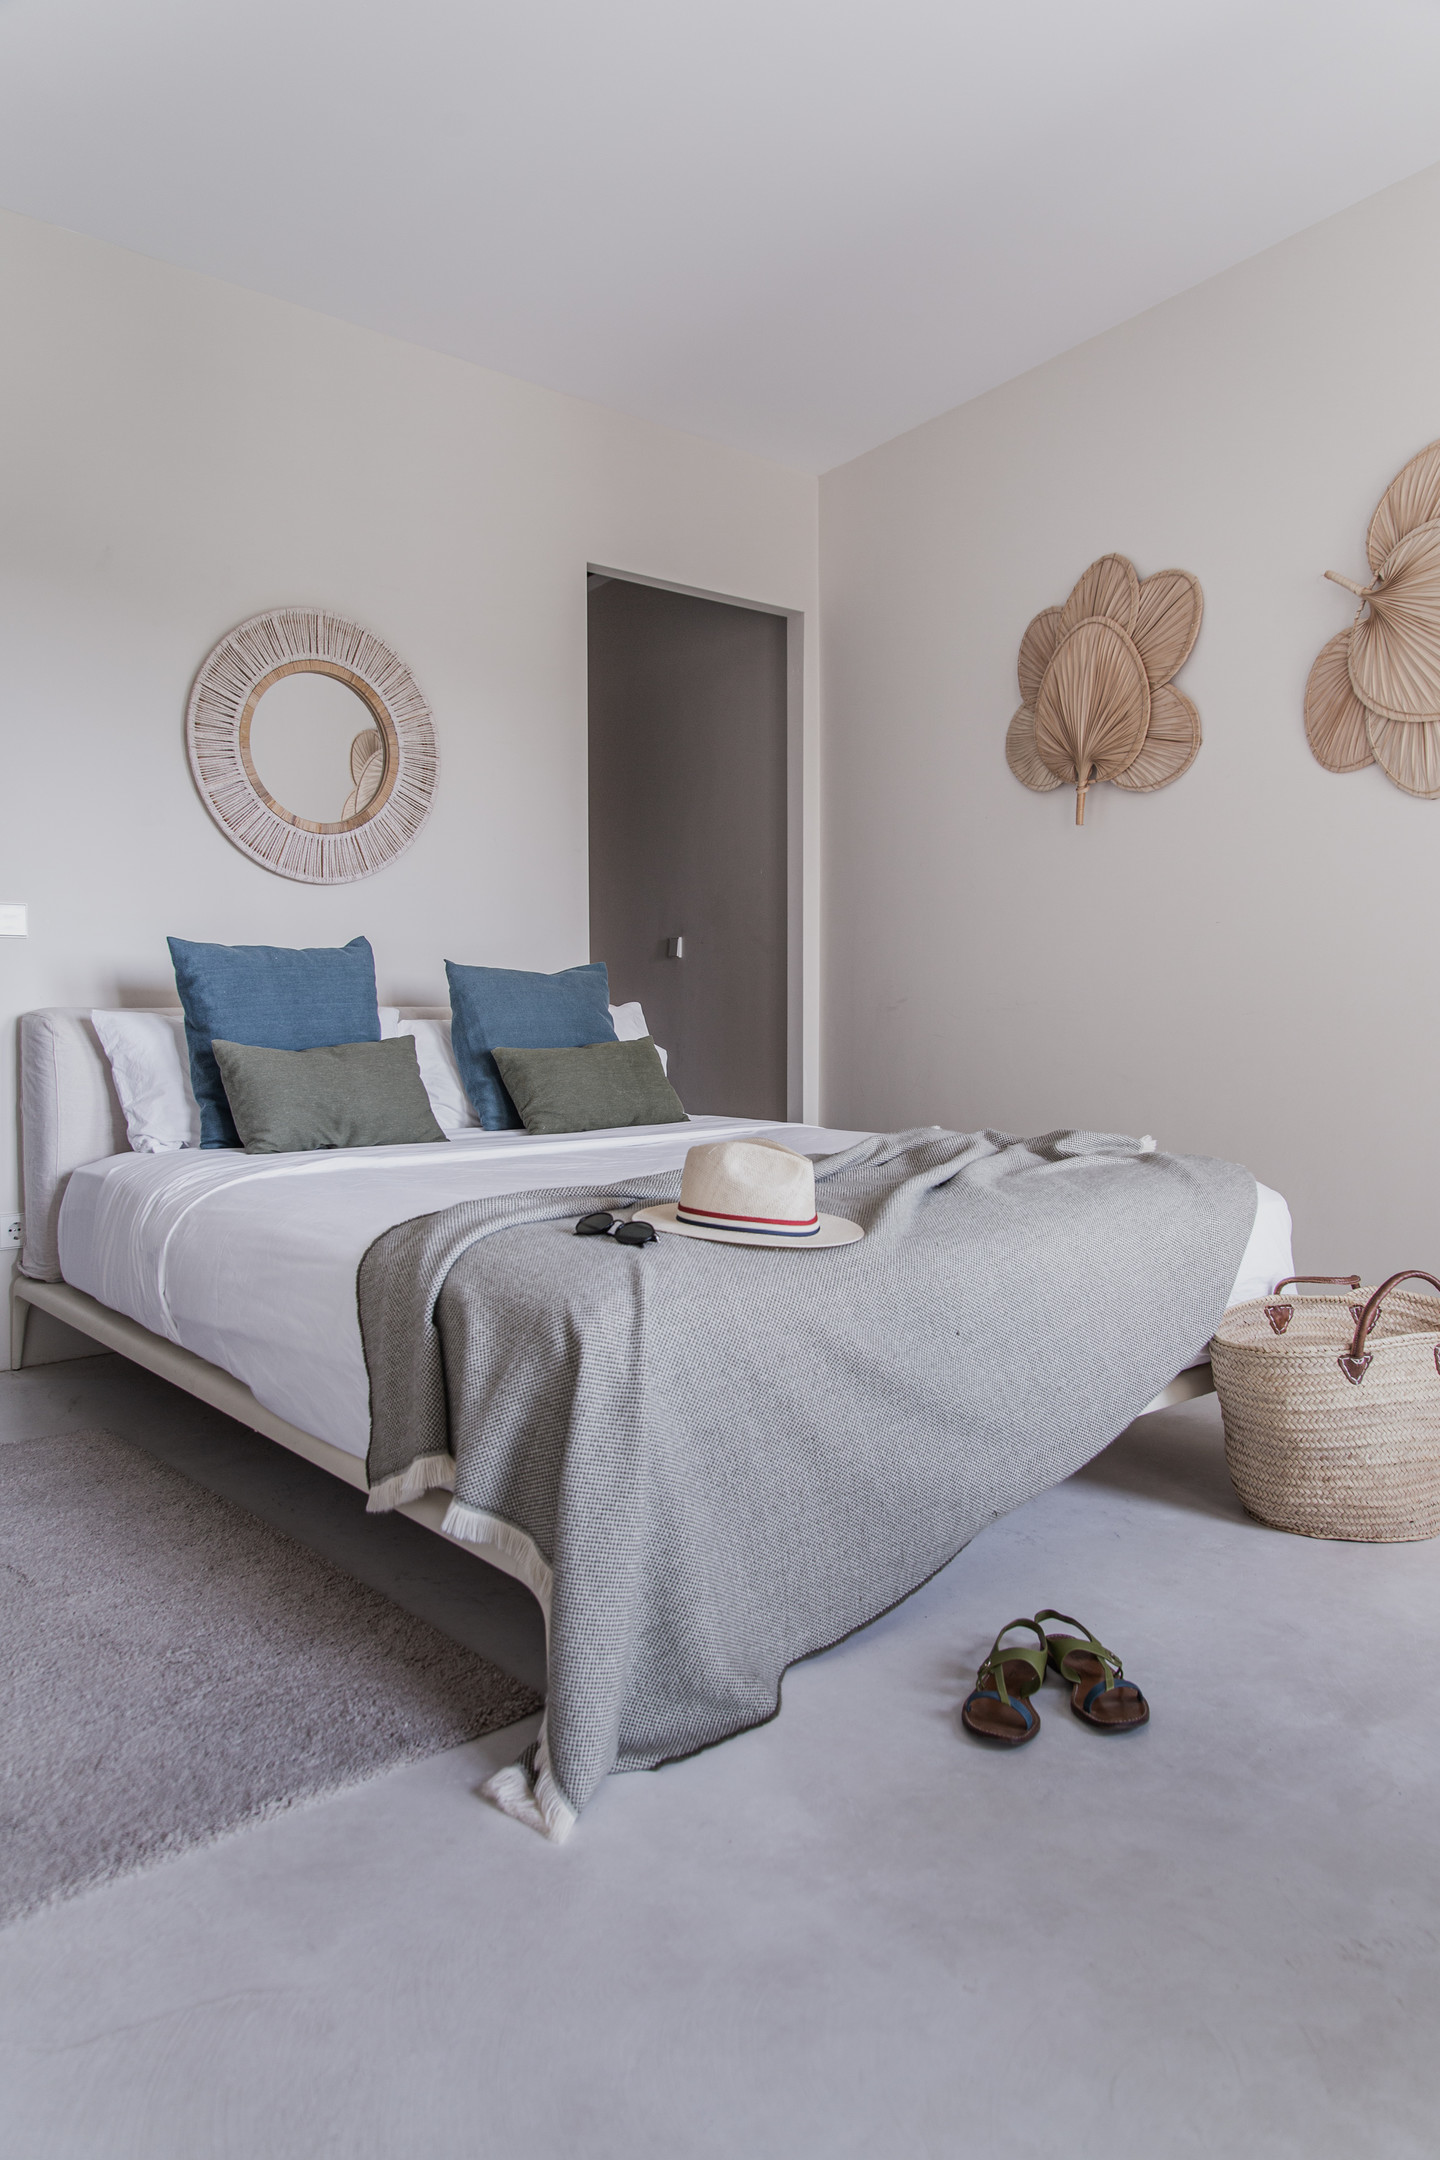 Như đã giới thiệu, căn hộ dành phần lớn không gian để thiết kế 3 phòng ngủ riêng biệt với mục đích cho thuê về sau. Phòng ngủ đầu tiên với gam màu be, xám, trắng, xanh lam cùng phụ kiện trang trí bằng sợi liễu gai, gỗ,... cho vẻ đẹp giản dị.